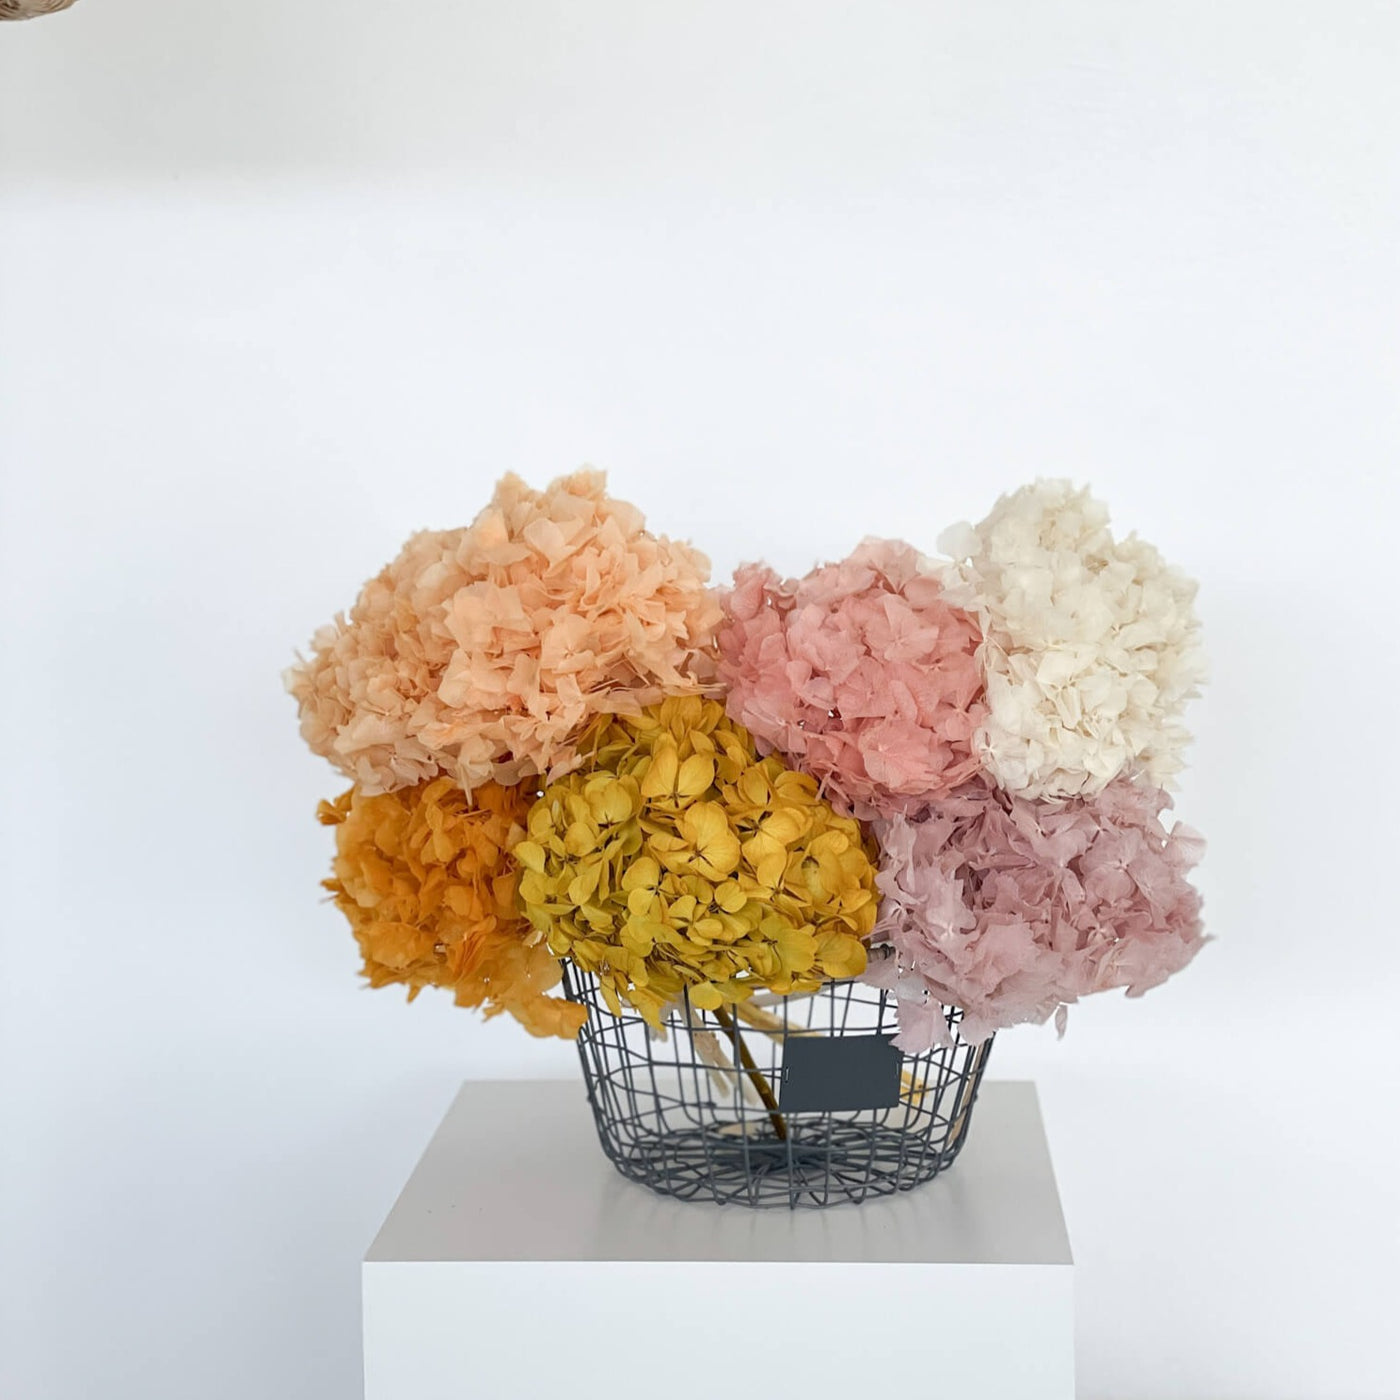 Hortensien konserviert | viele Farben | tolle Blüte | 30-40 cm - Farbe: weiß, lila, apricot, schwarz, blau, pink, rose, rosa, dunkel blau, flieder, weinrot, gelb